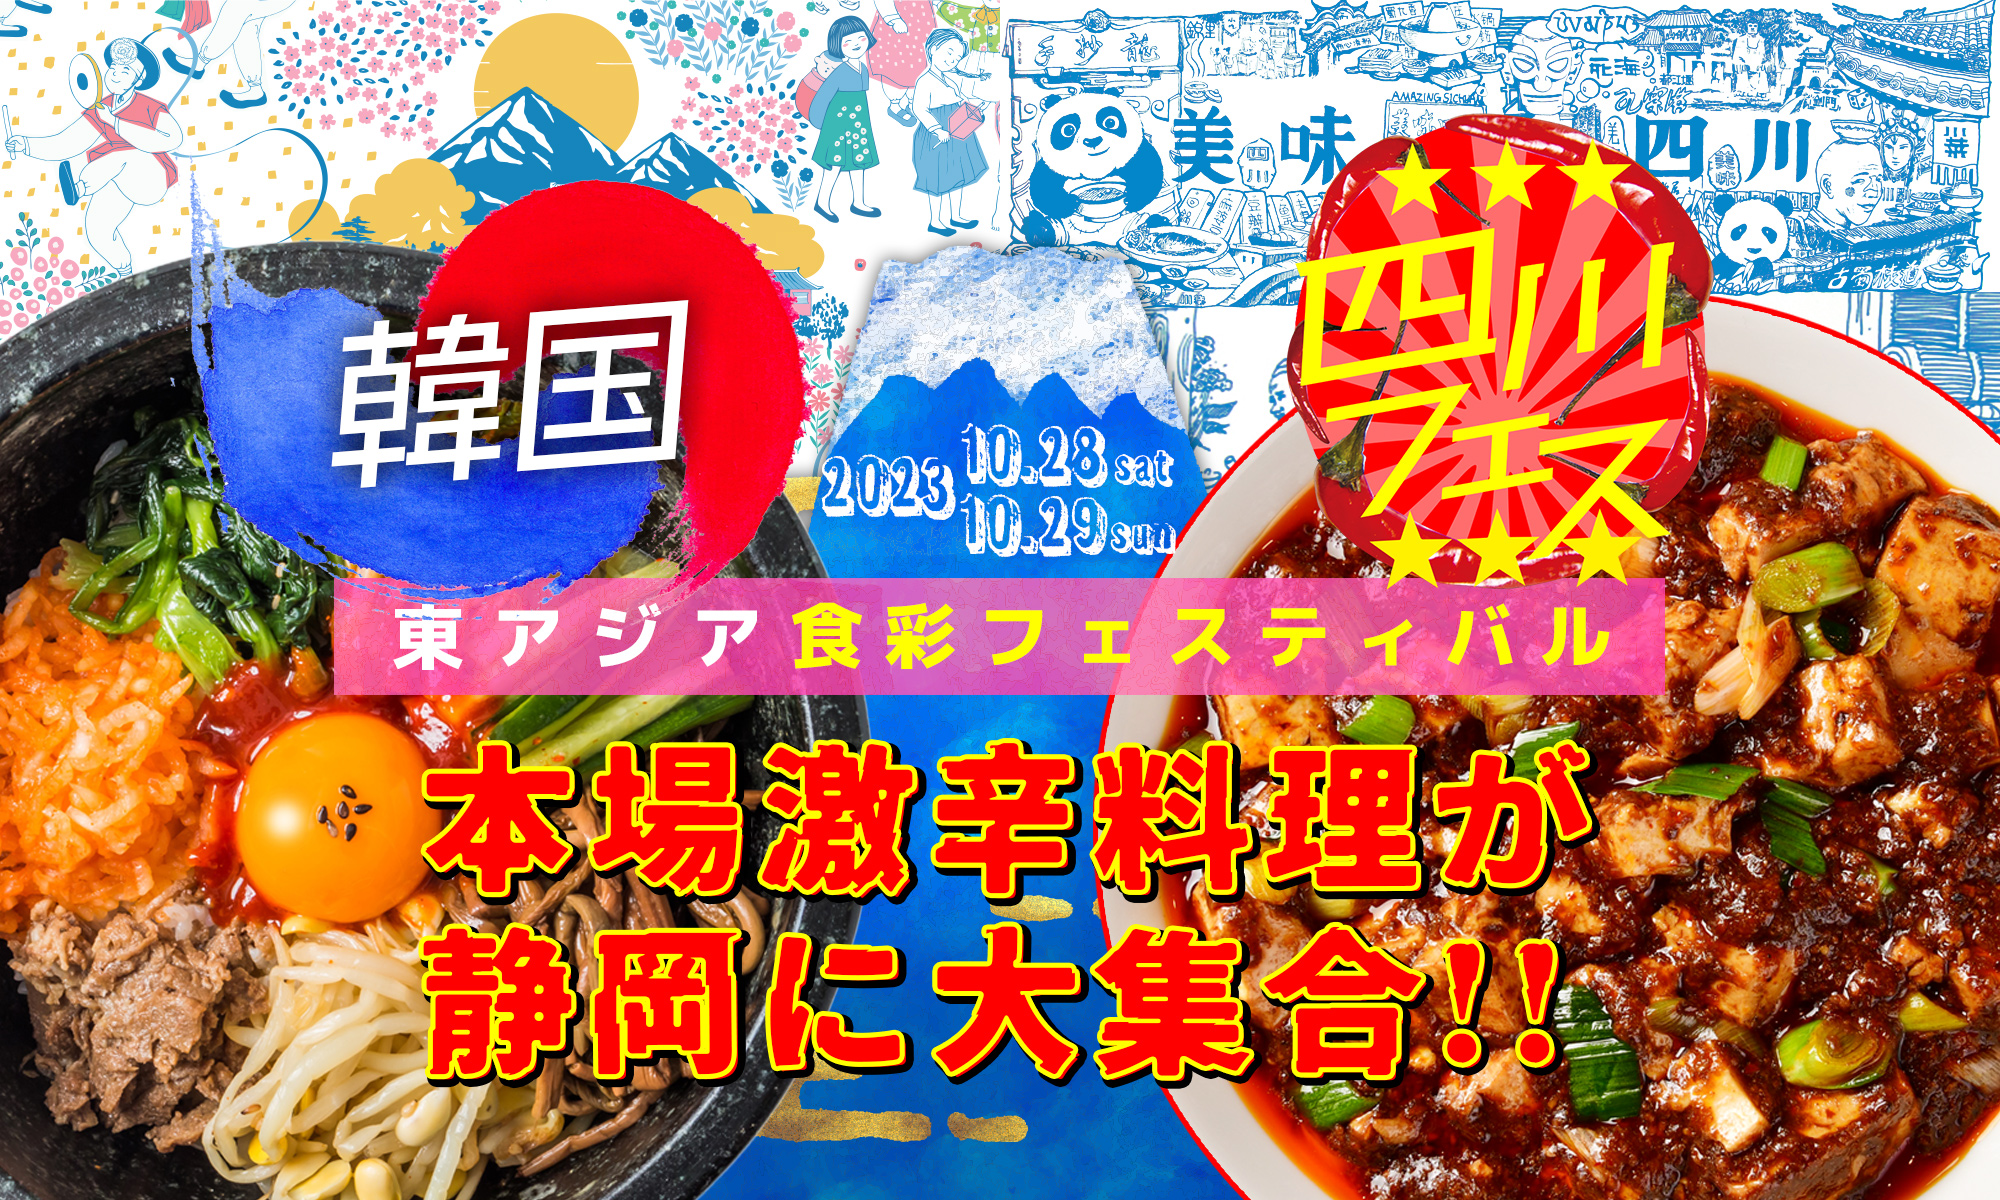 【四川フェスコラボ】東アジア食彩フェスティバル